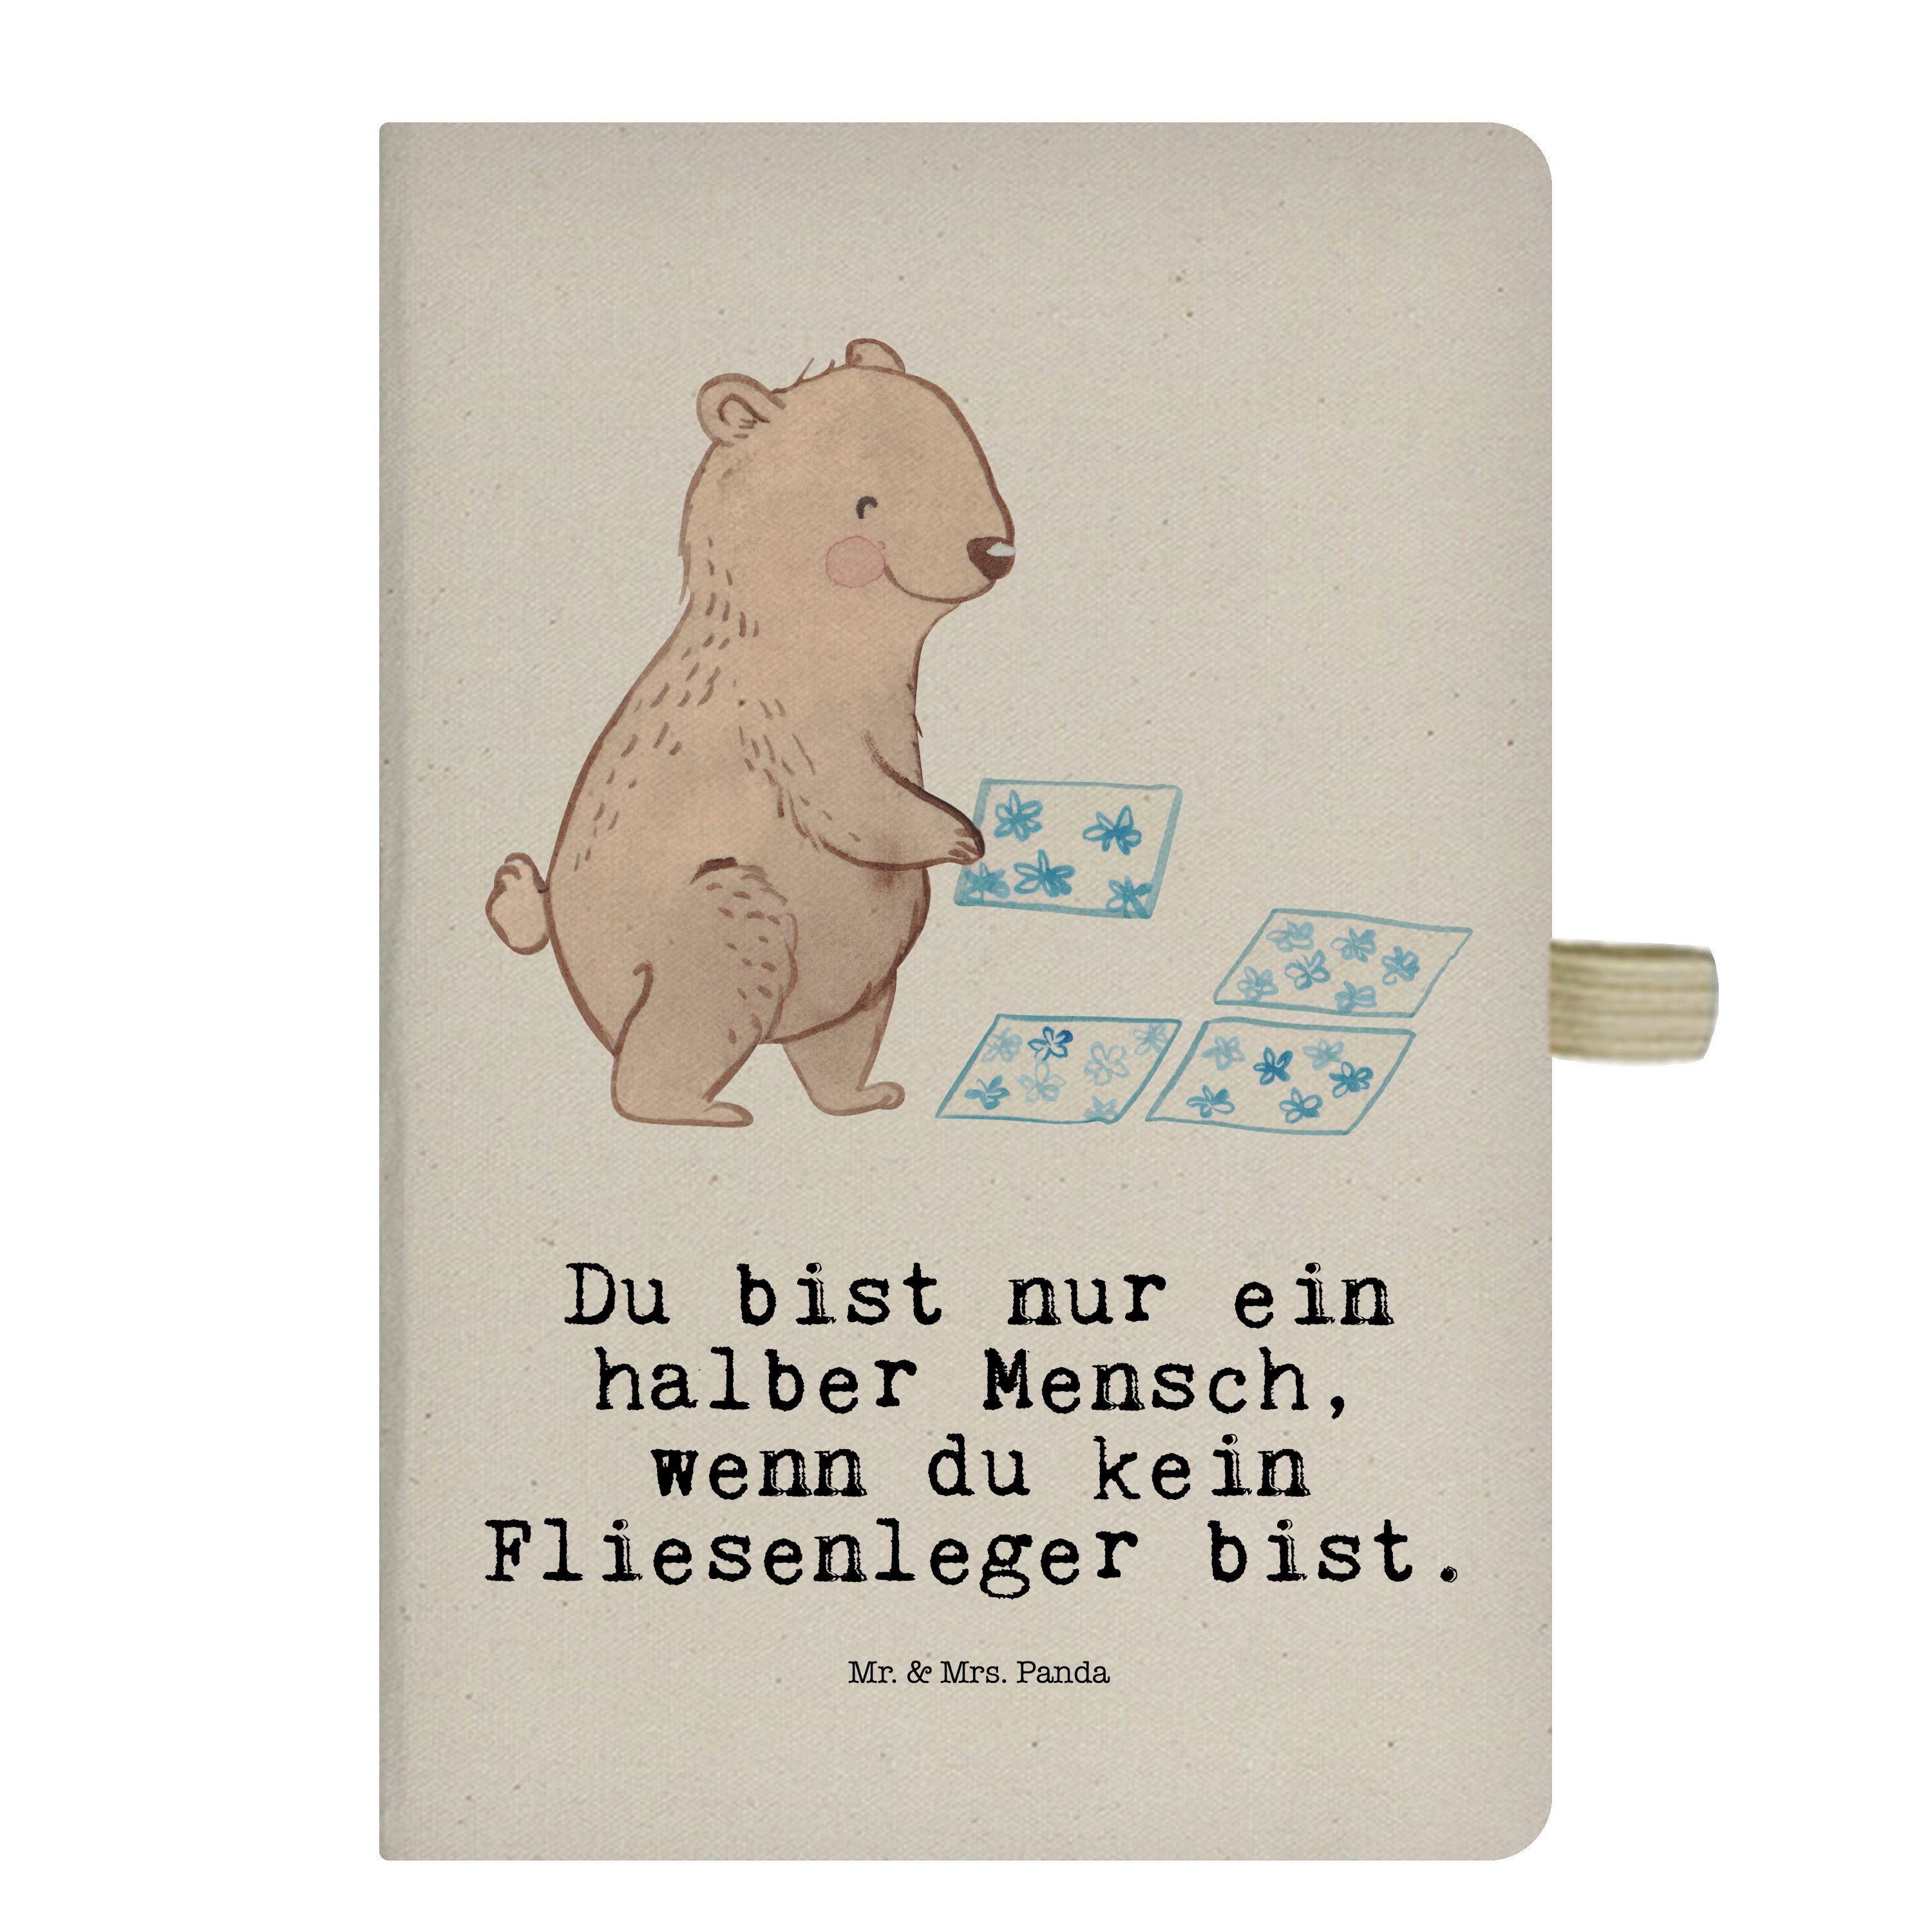 Mr. & Mrs. Panda Notizbuch Fliesenleger mit Herz - Transparent - Geschenk, Schreibbuch, Bad, Kla Mr. & Mrs. Panda